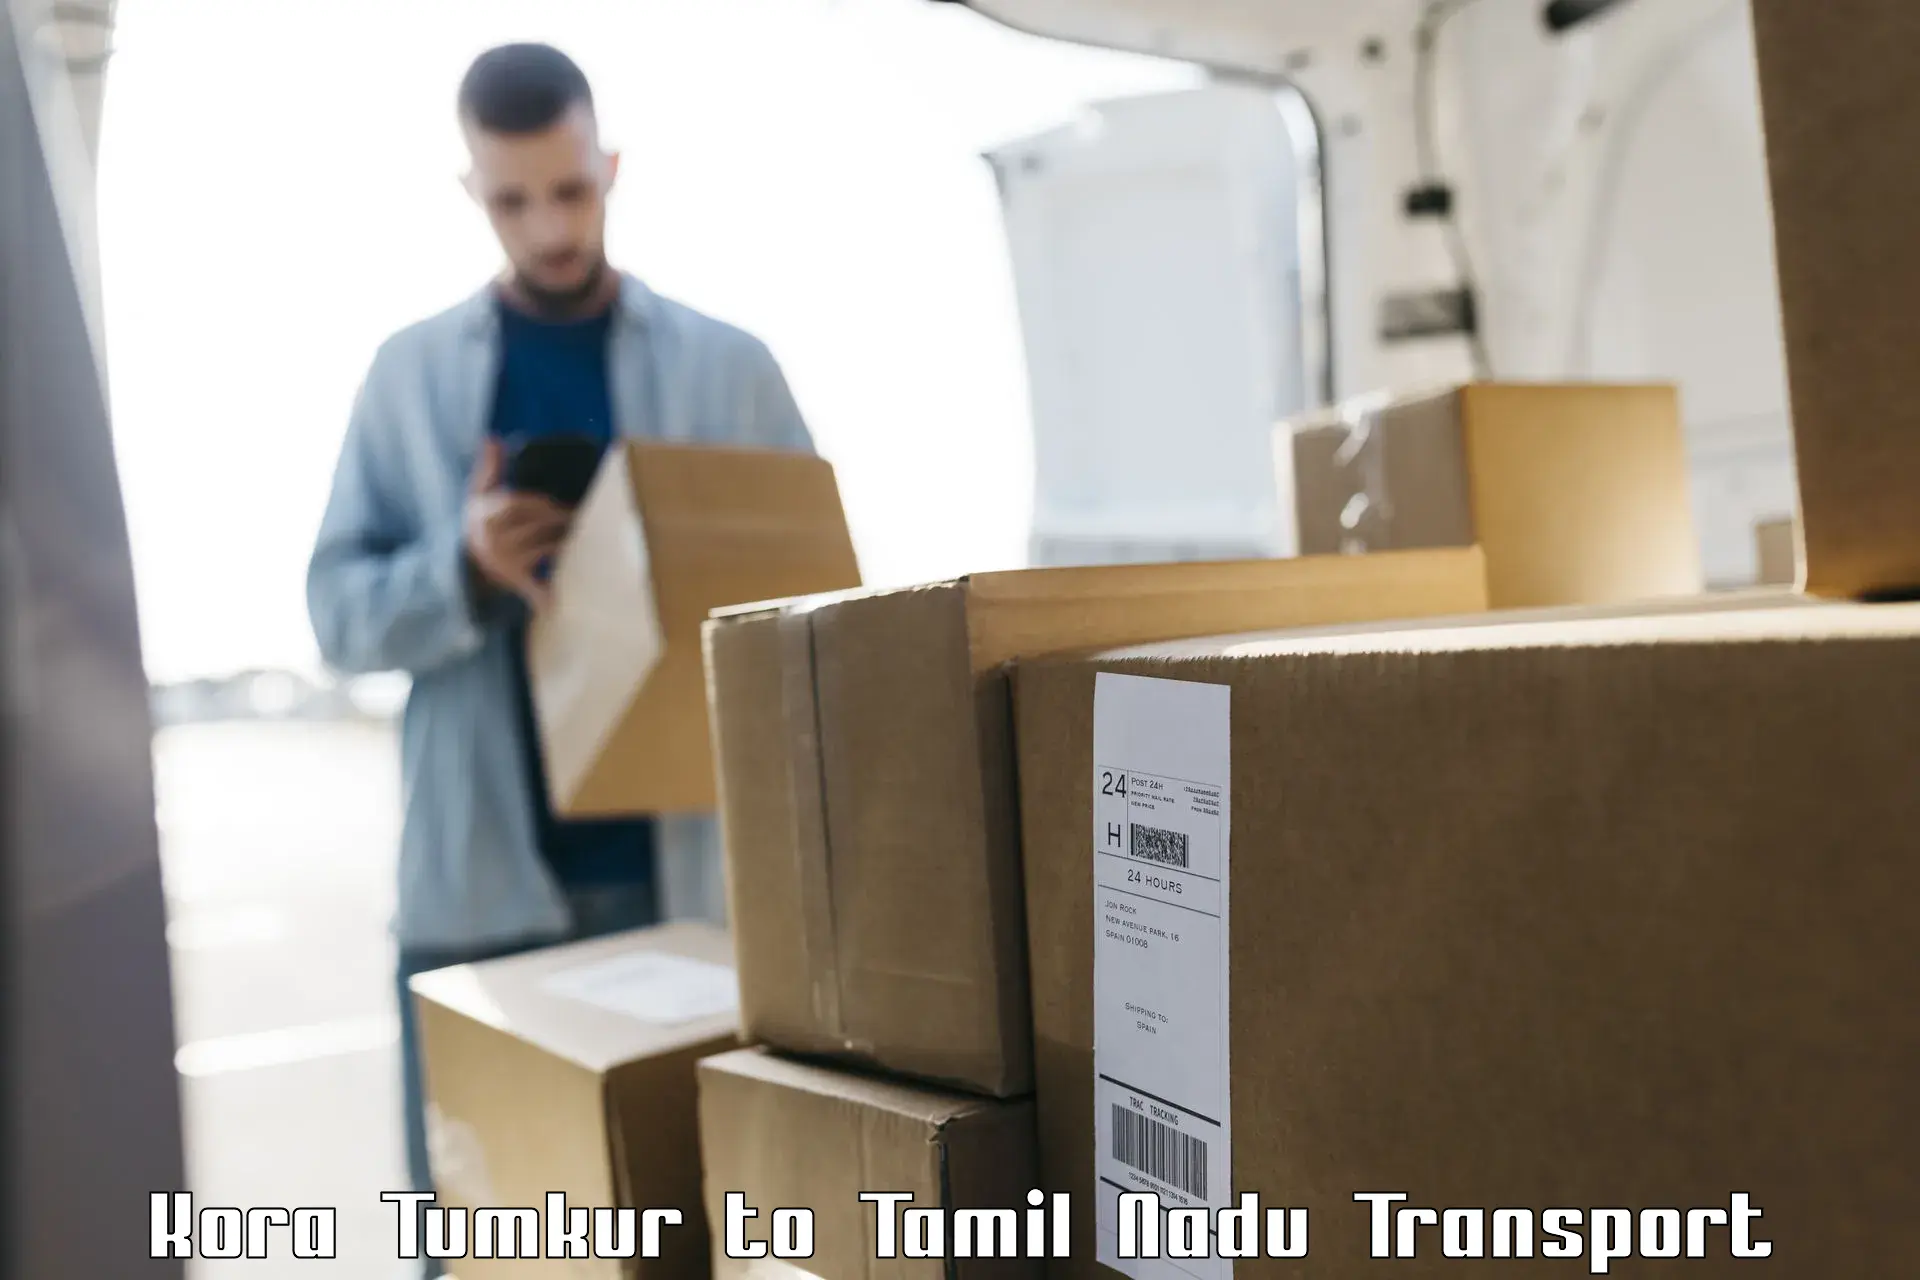 Container transportation services Kora Tumkur to Mannargudi